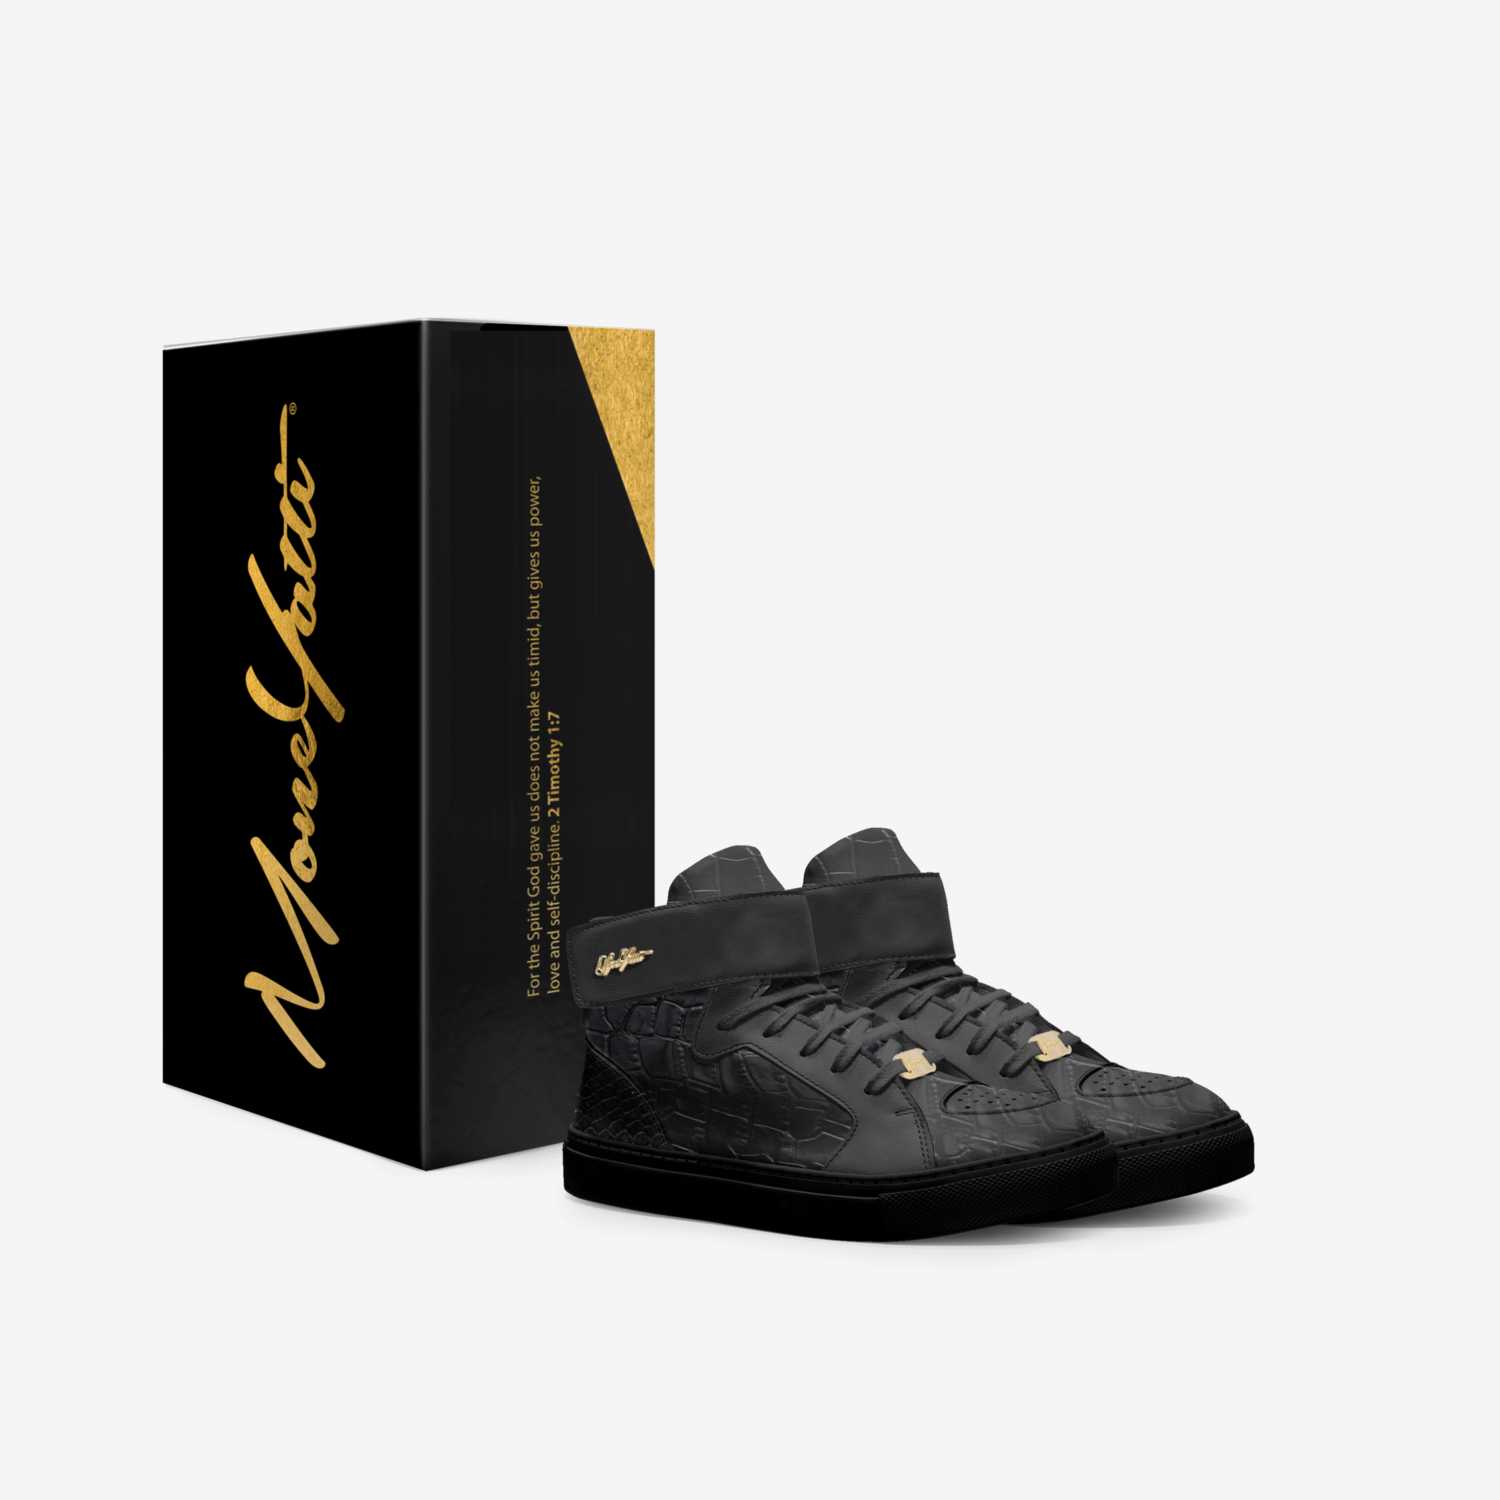 Moneyatti KidsH11 custom made in Italy shoes by Moneyatti Brand | Box view